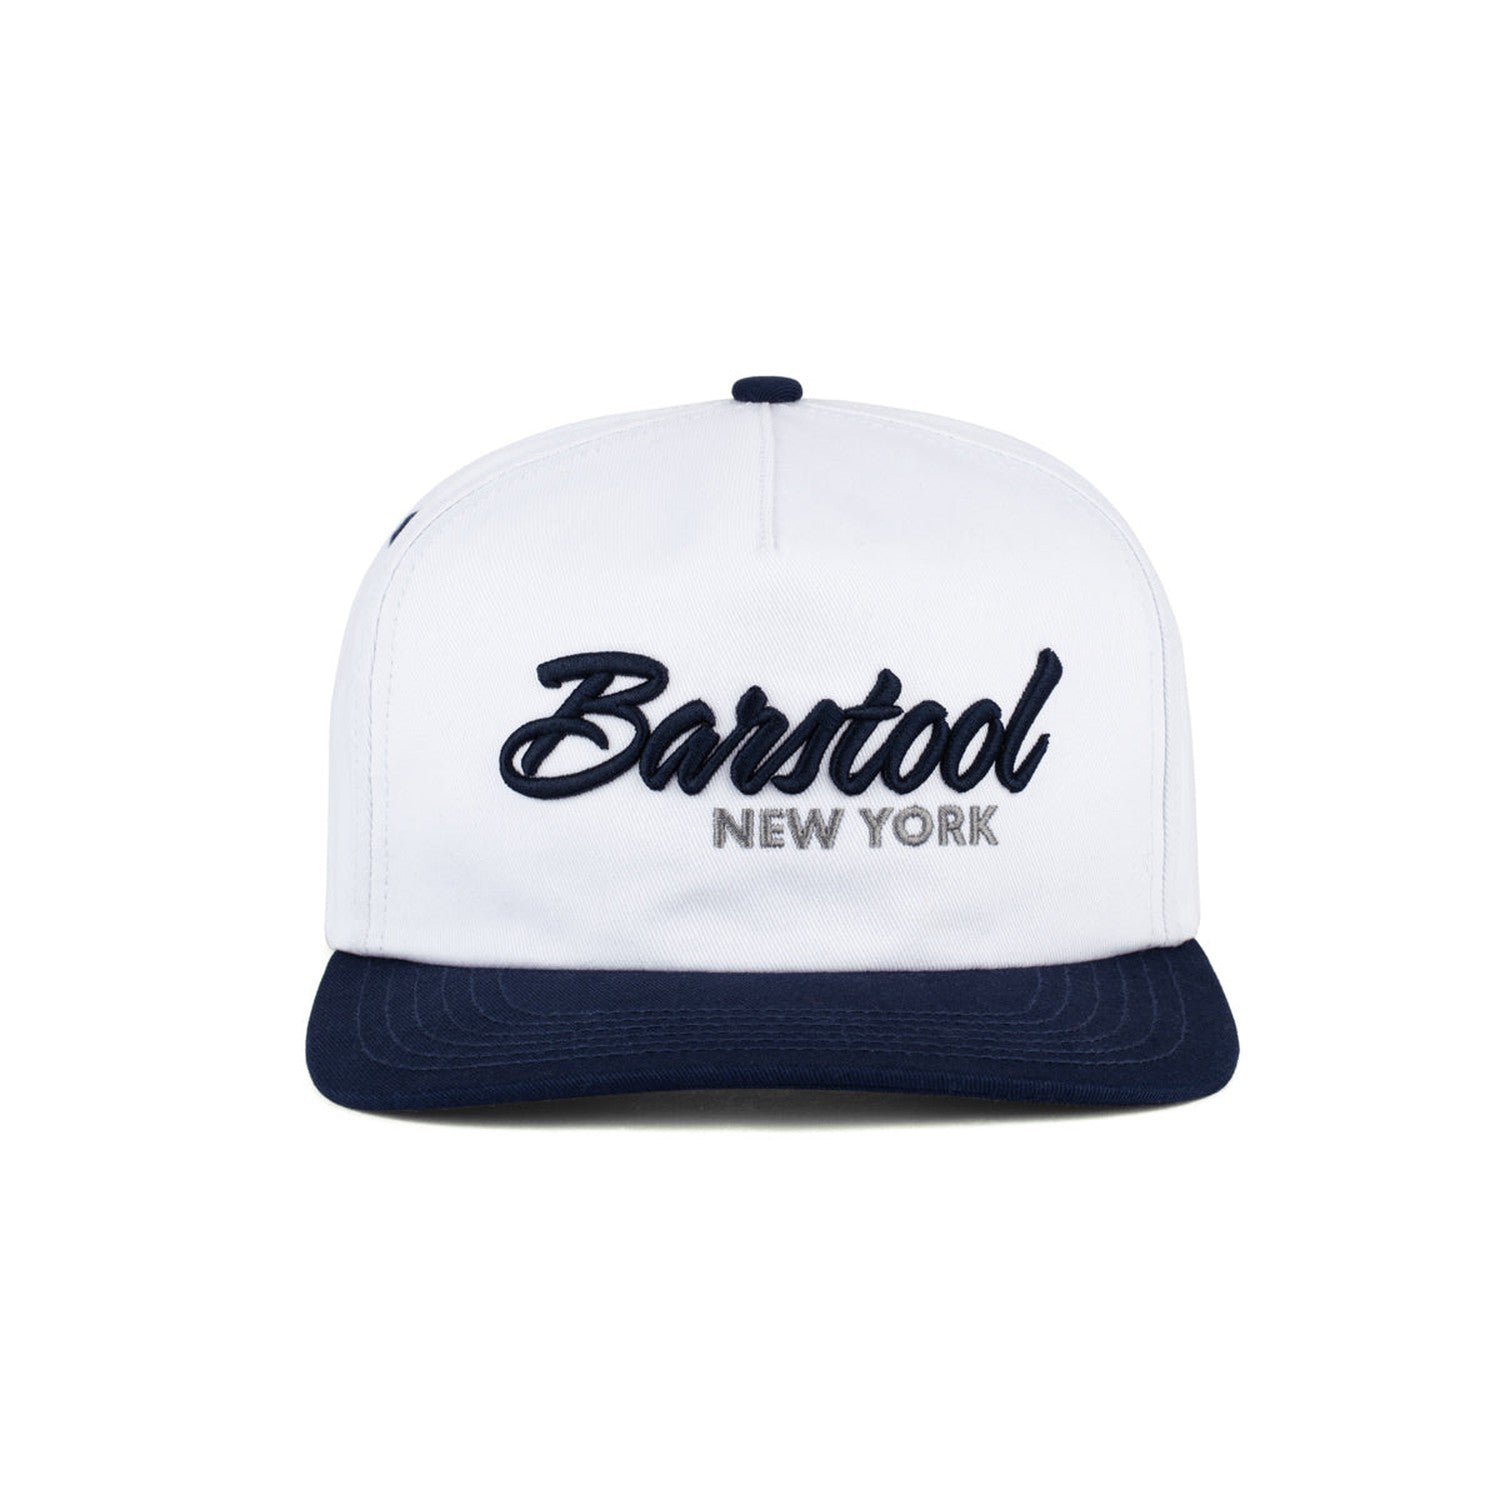 Barstool NY Retro Snapback Hat-Barstool Sports Hats, Clothing & Merch